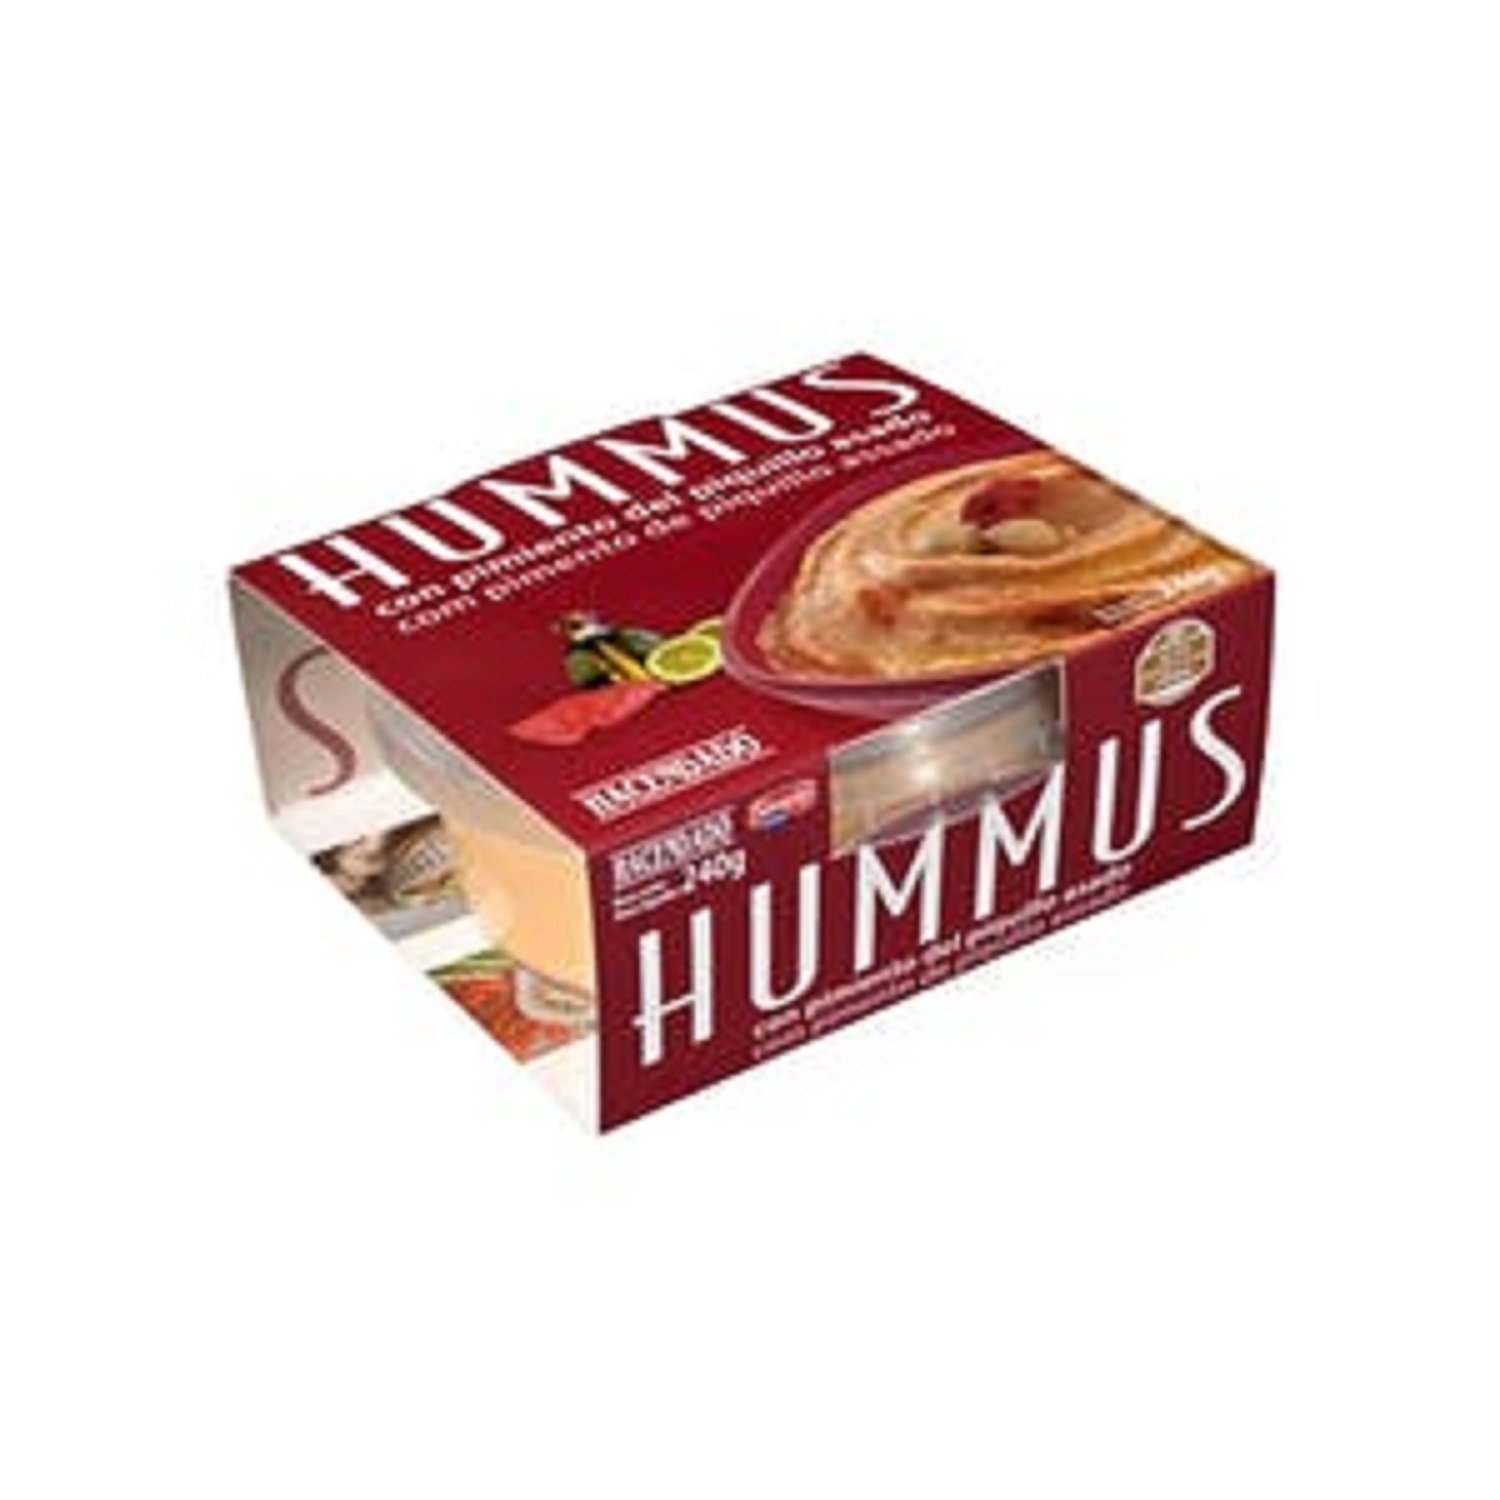 Hummus pimiento piquillo / Mercadona